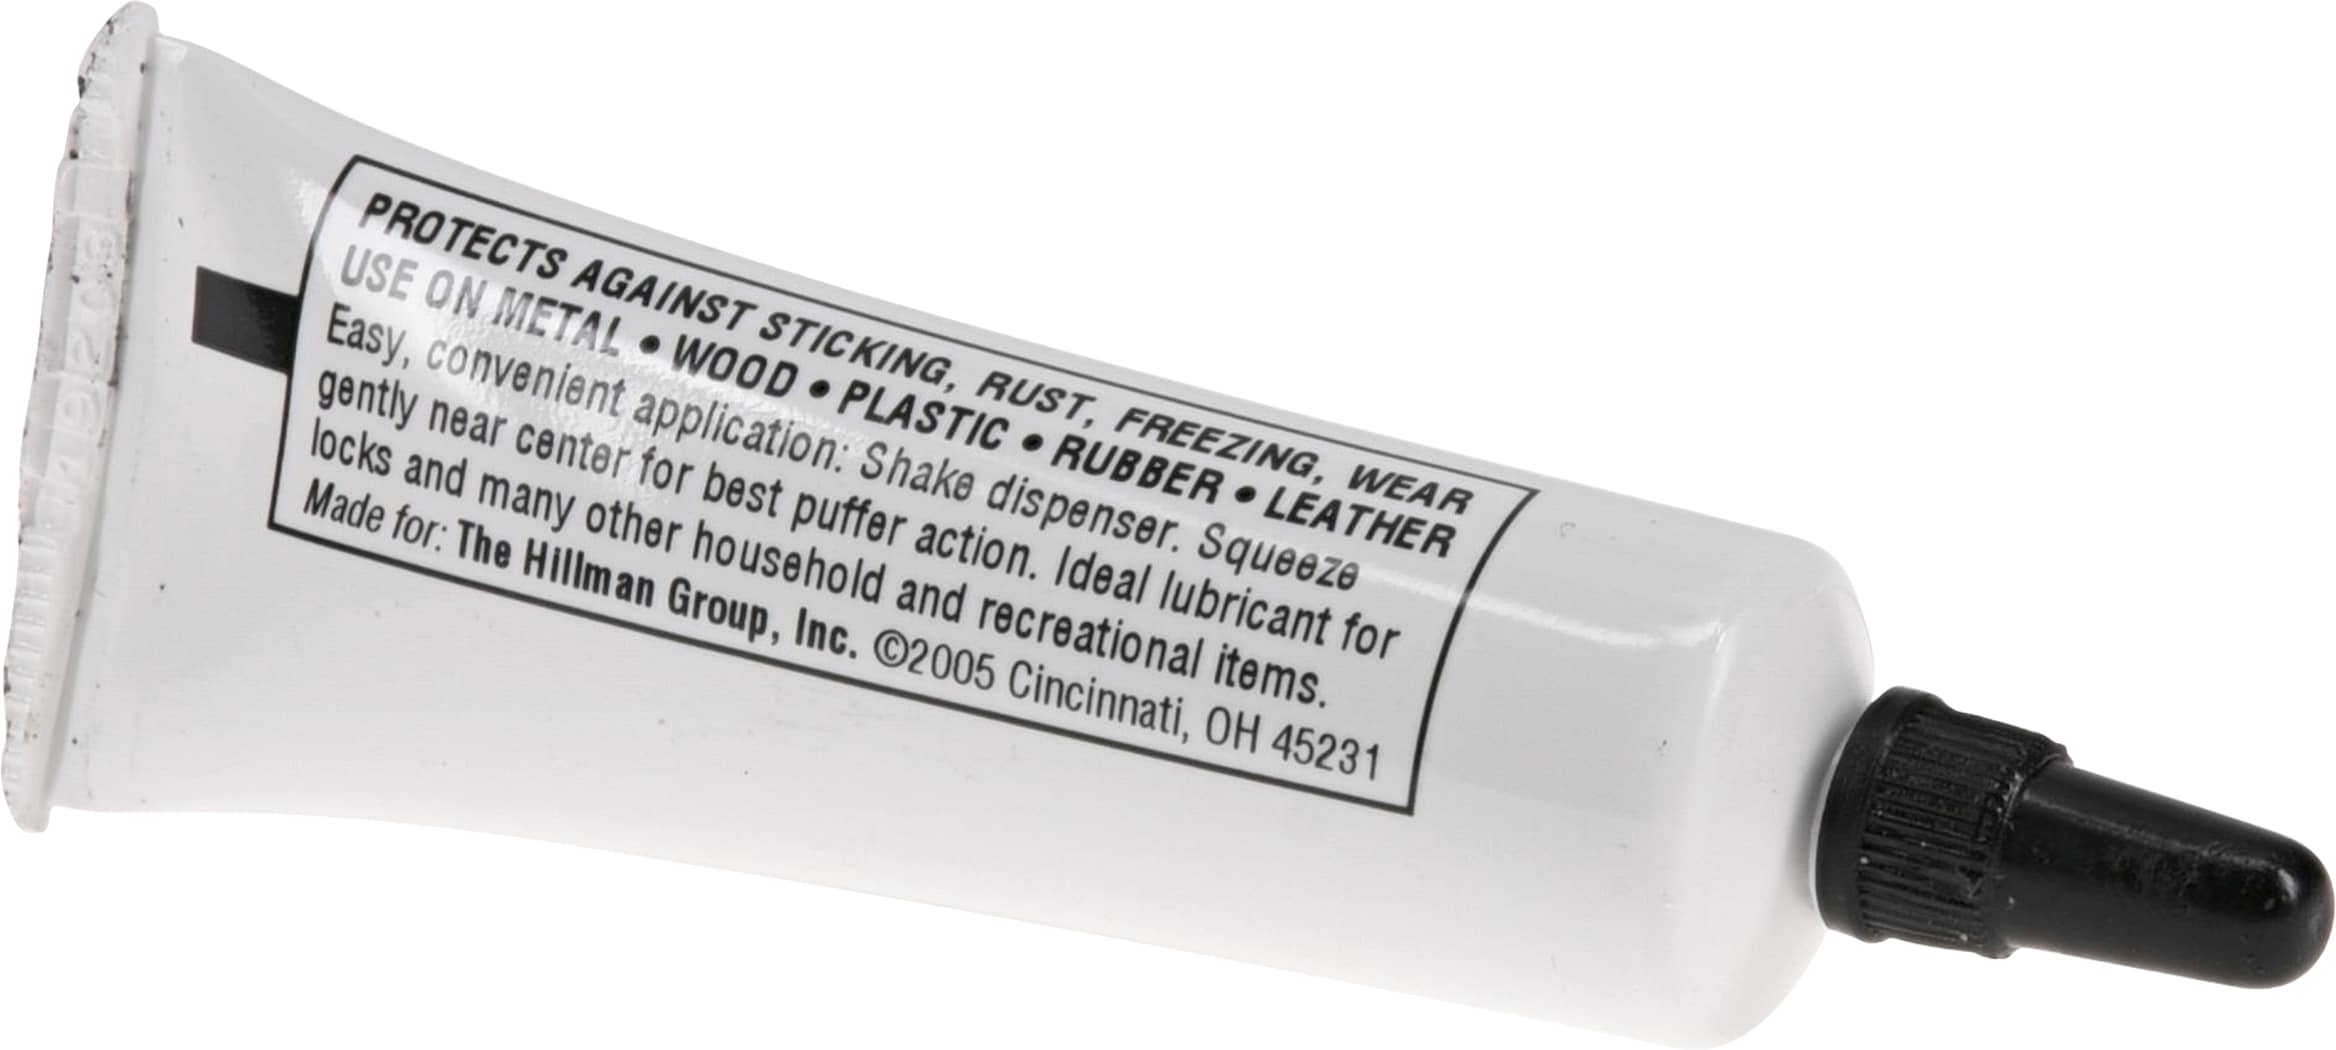 Superior Graphite 31646G – Tube-O-Lube® Graphite Powder (Pack of